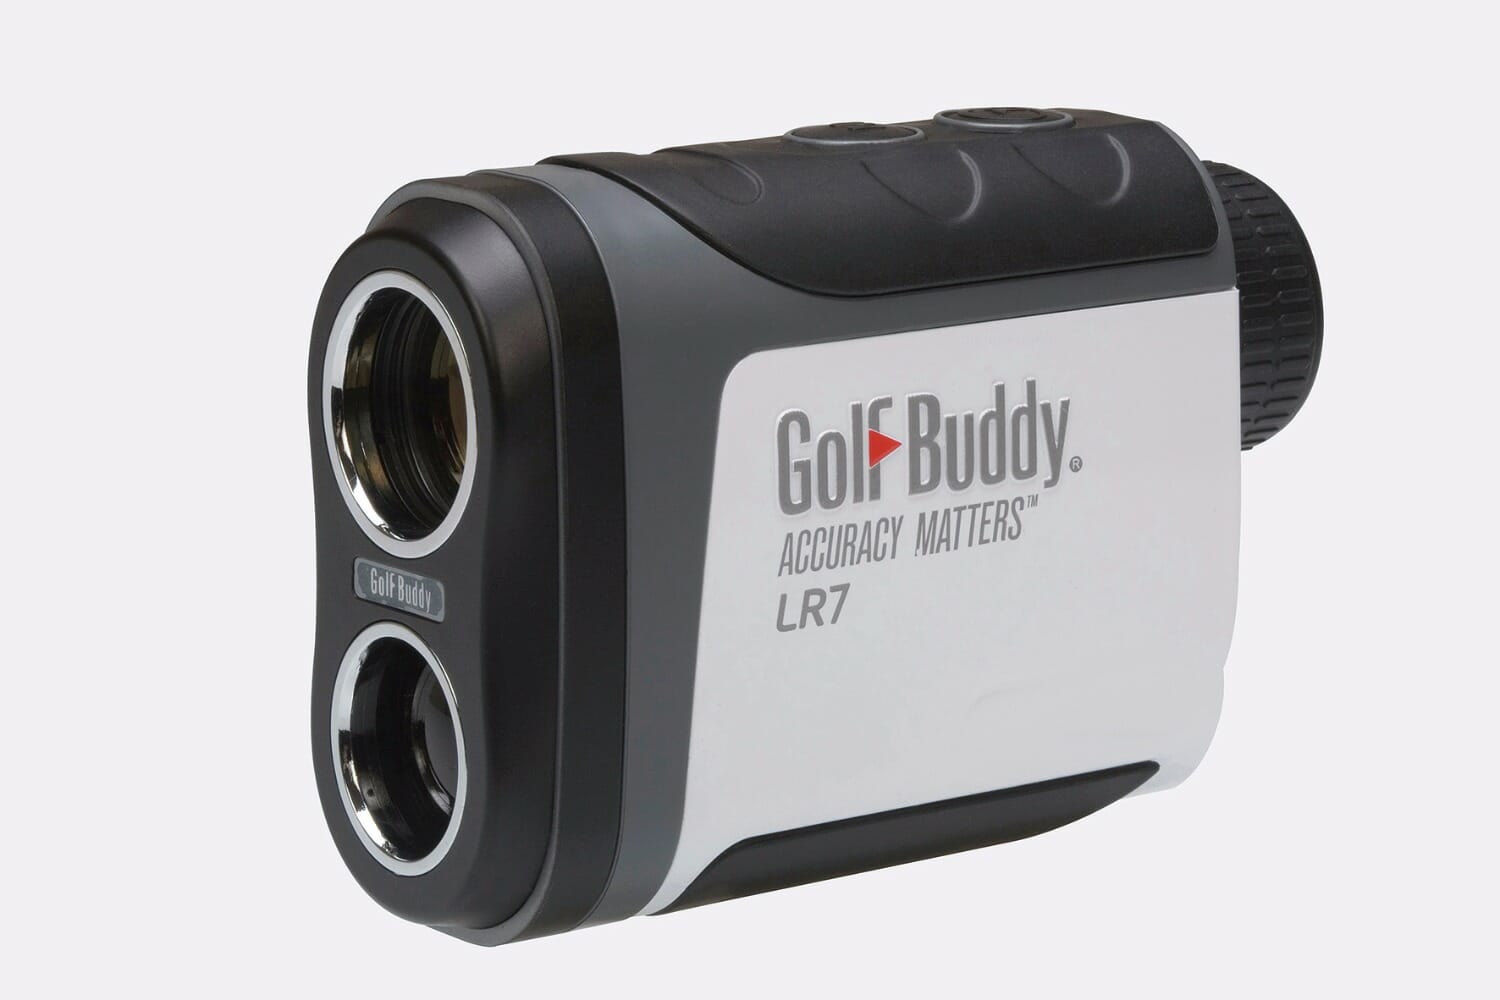 GolfBuddy launch the LR7 laser rangefinder